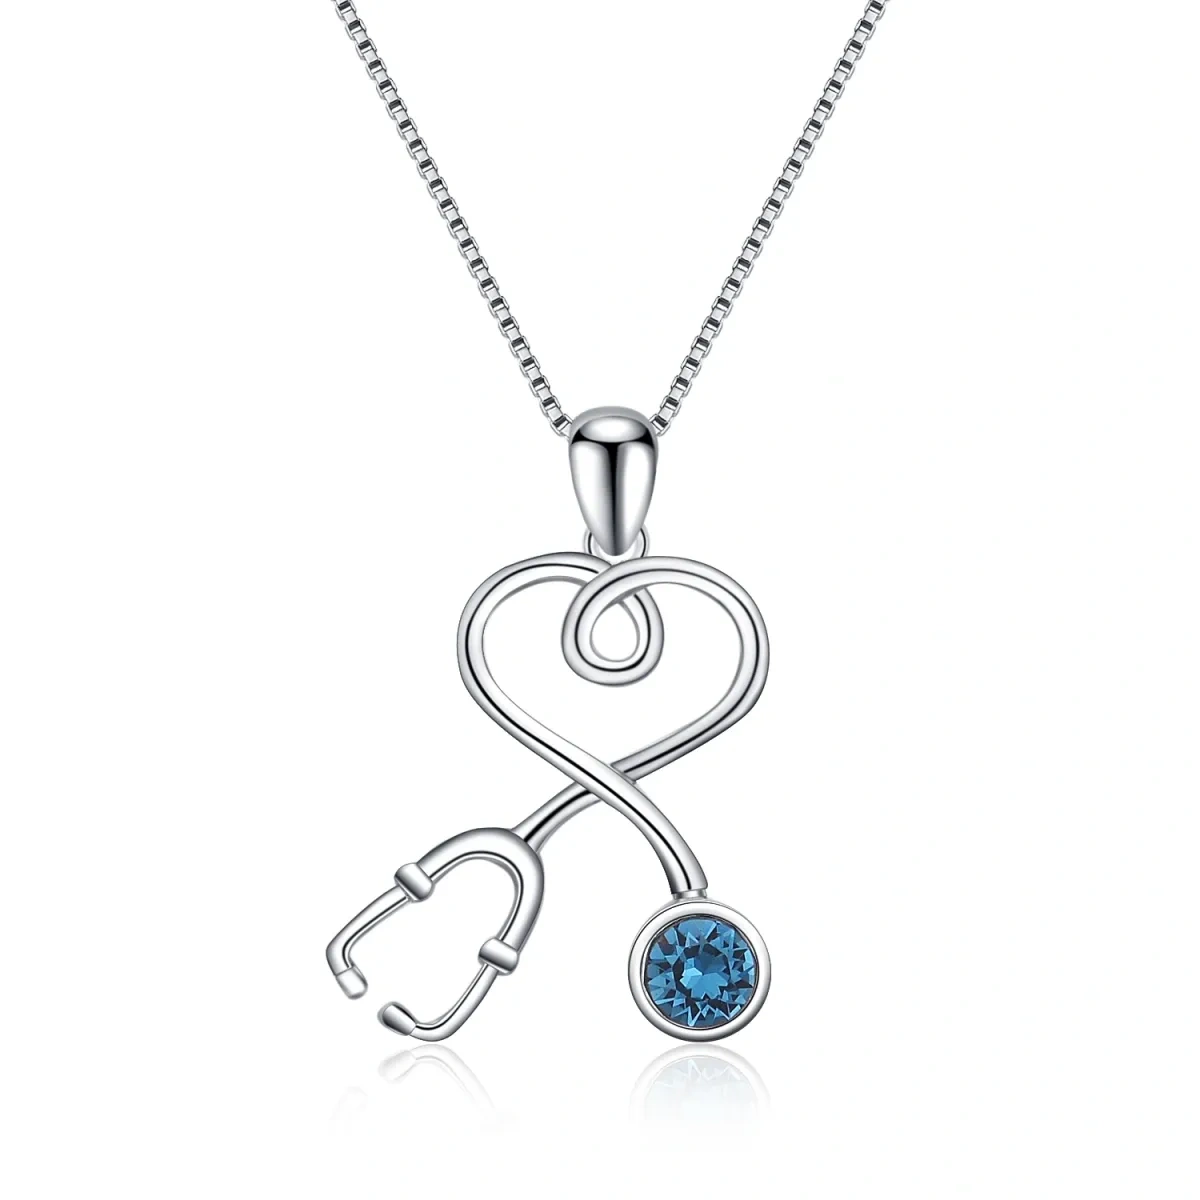 Halskette mit Stethoskop für Krankenschwestern und Ärzte, 925er Sterlingsilber, mit Charm-Anhänger-1